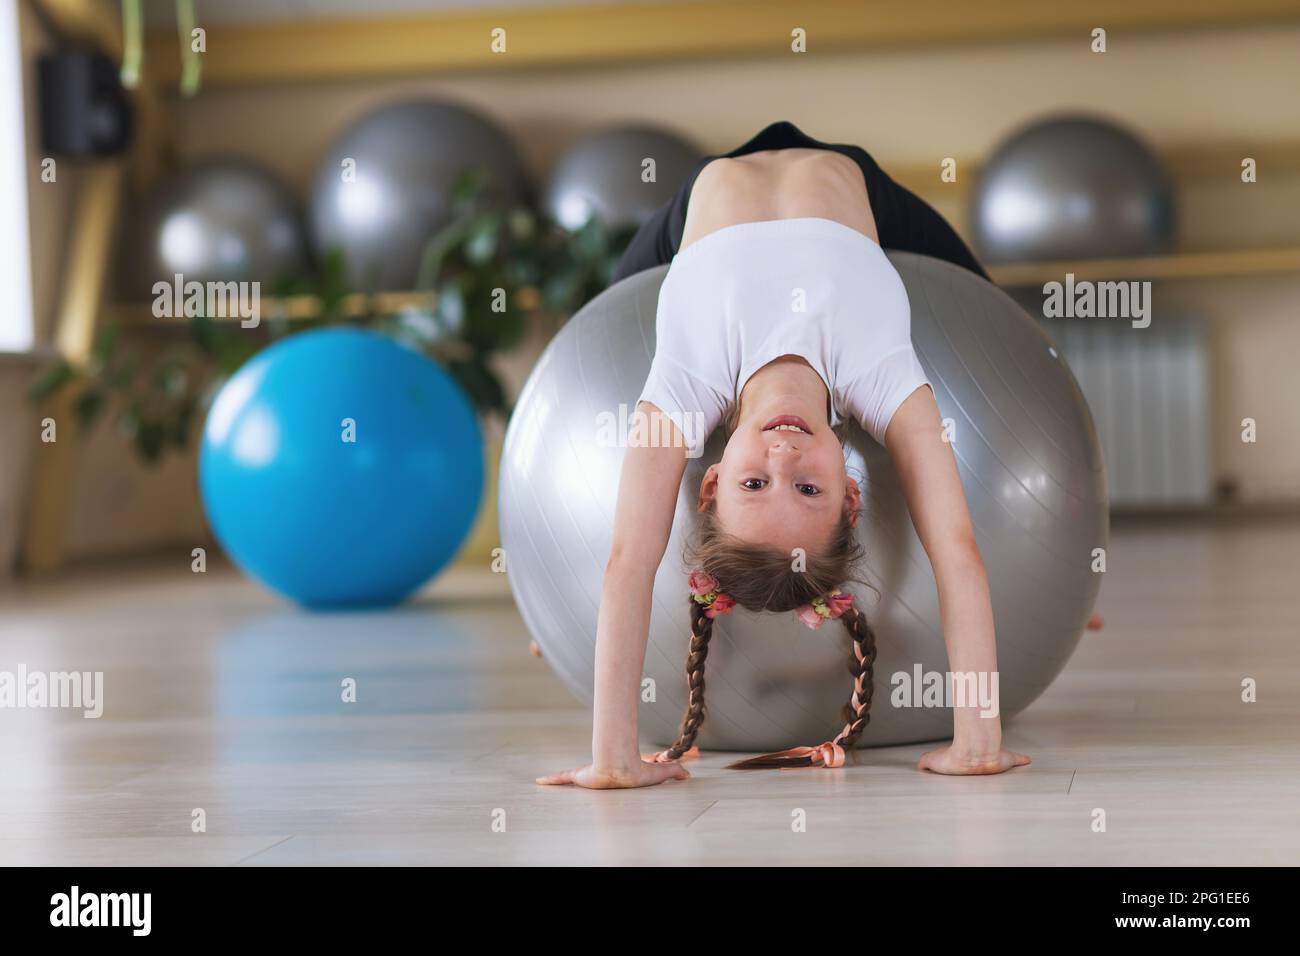 Une petite fille de vêtements de sport s'entraîne sur un fitball dans un studio de fitness, exécute un exercice de pont, l'enfant sourit et regarde la caméra Banque D'Images